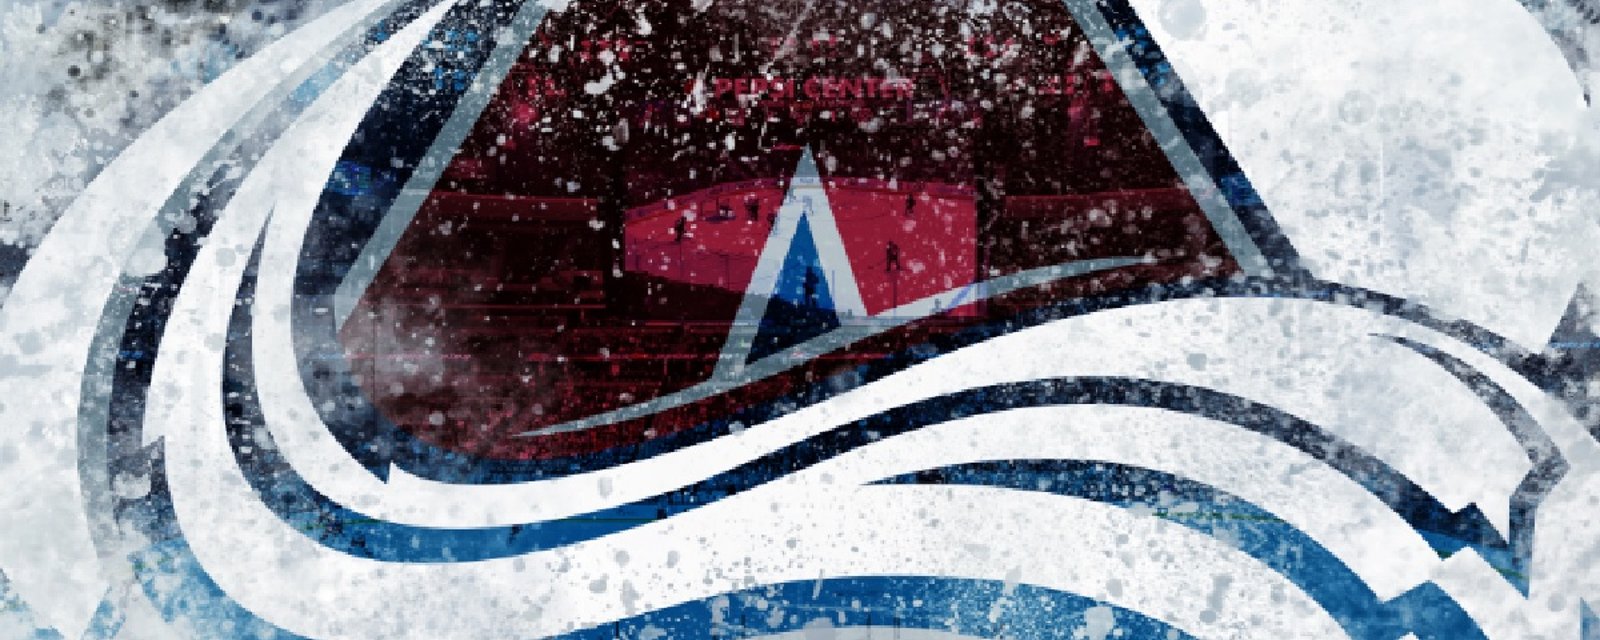 Un fan de l'Avalanche perd patience et change le logo!